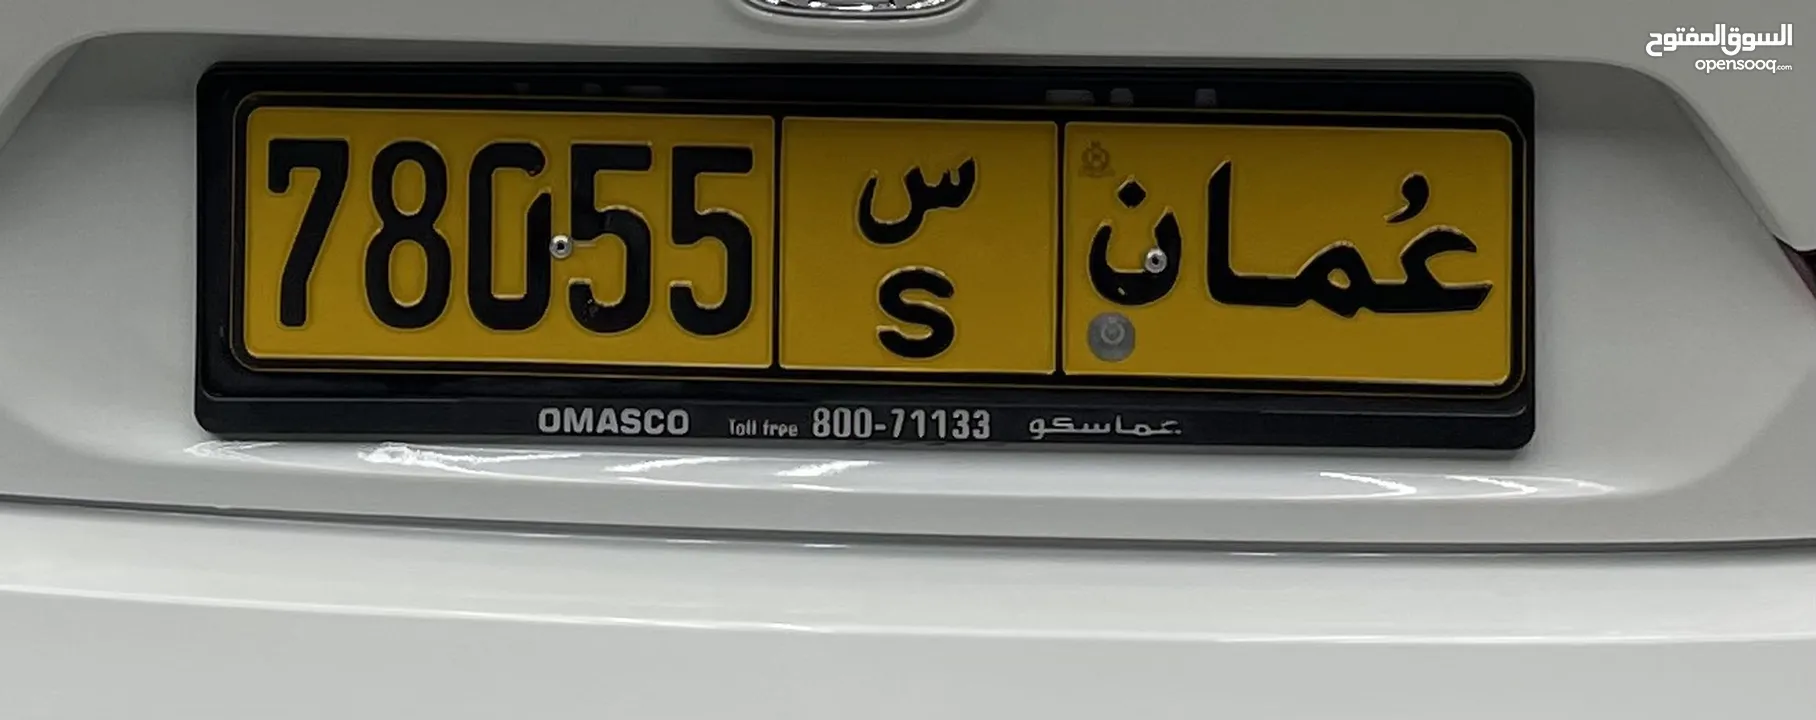 Oman car number for sale.